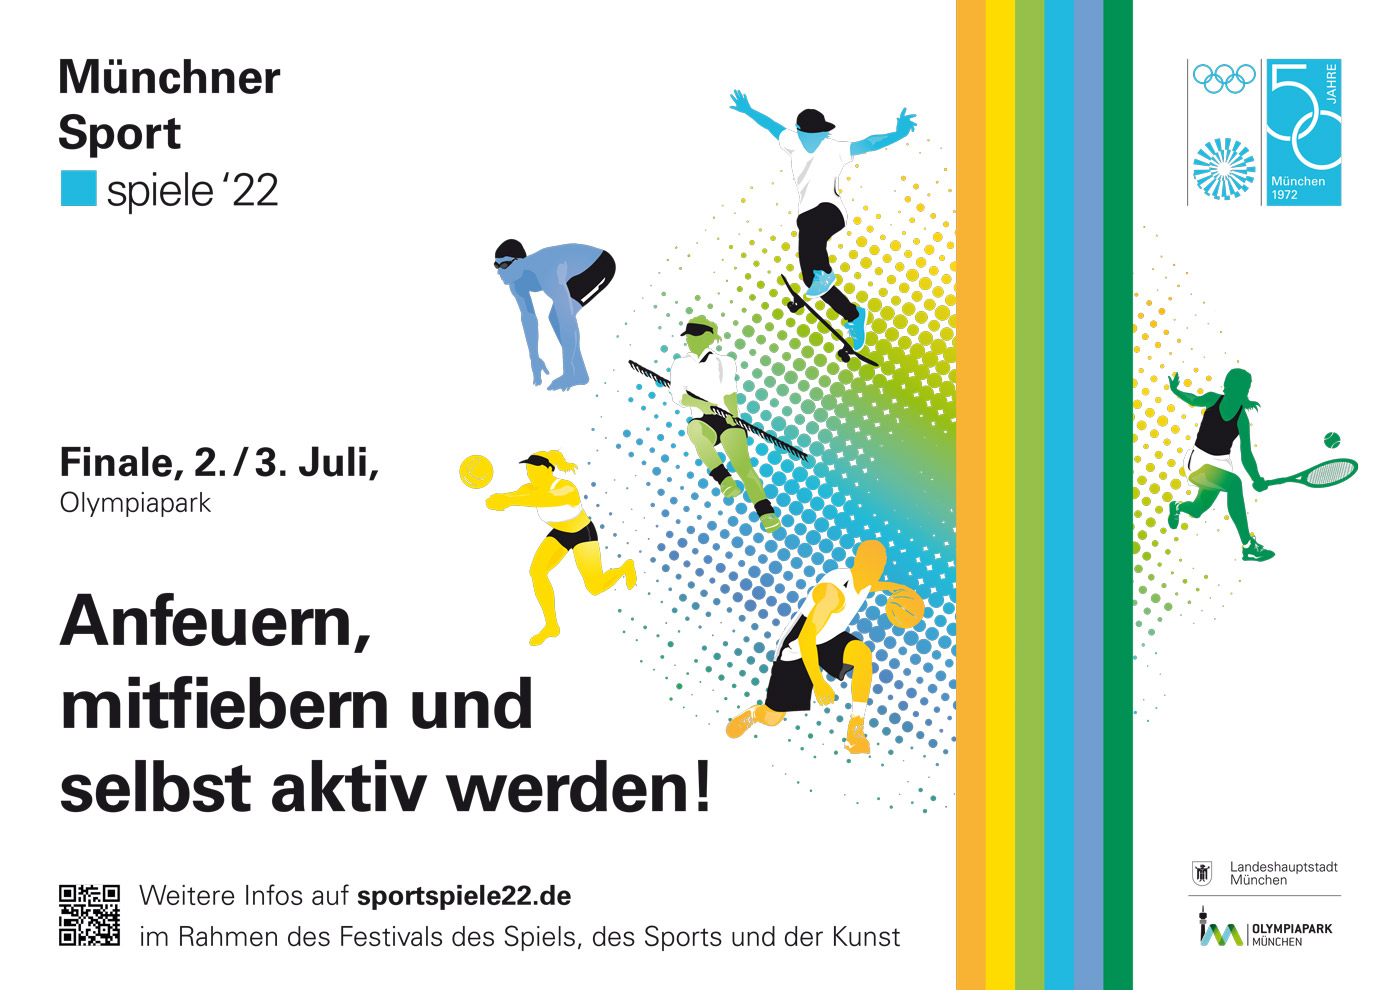 Münchner Sportspiele 2022